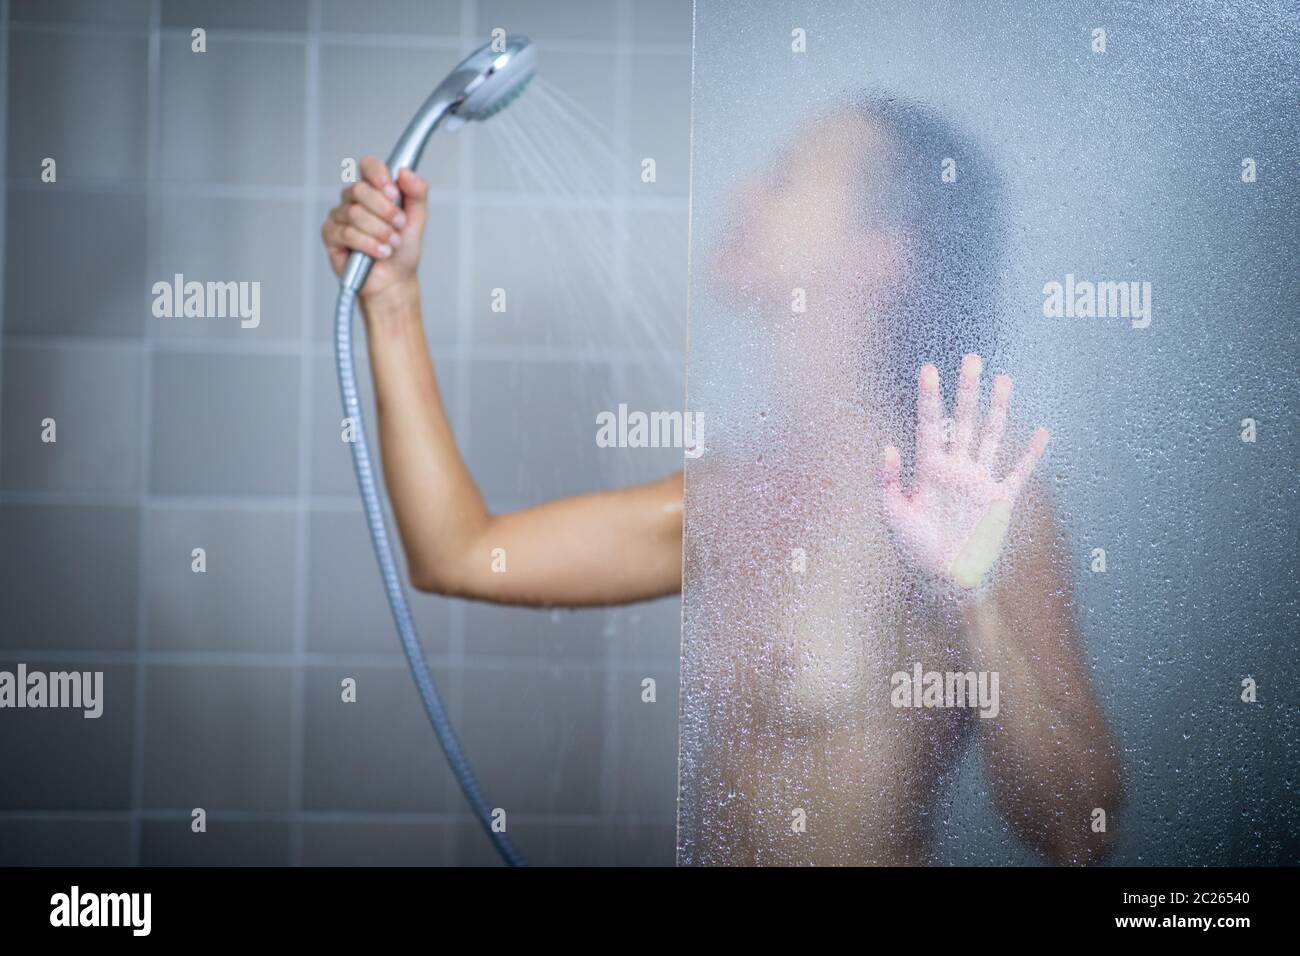 Принимает душ и показывает красивое тело